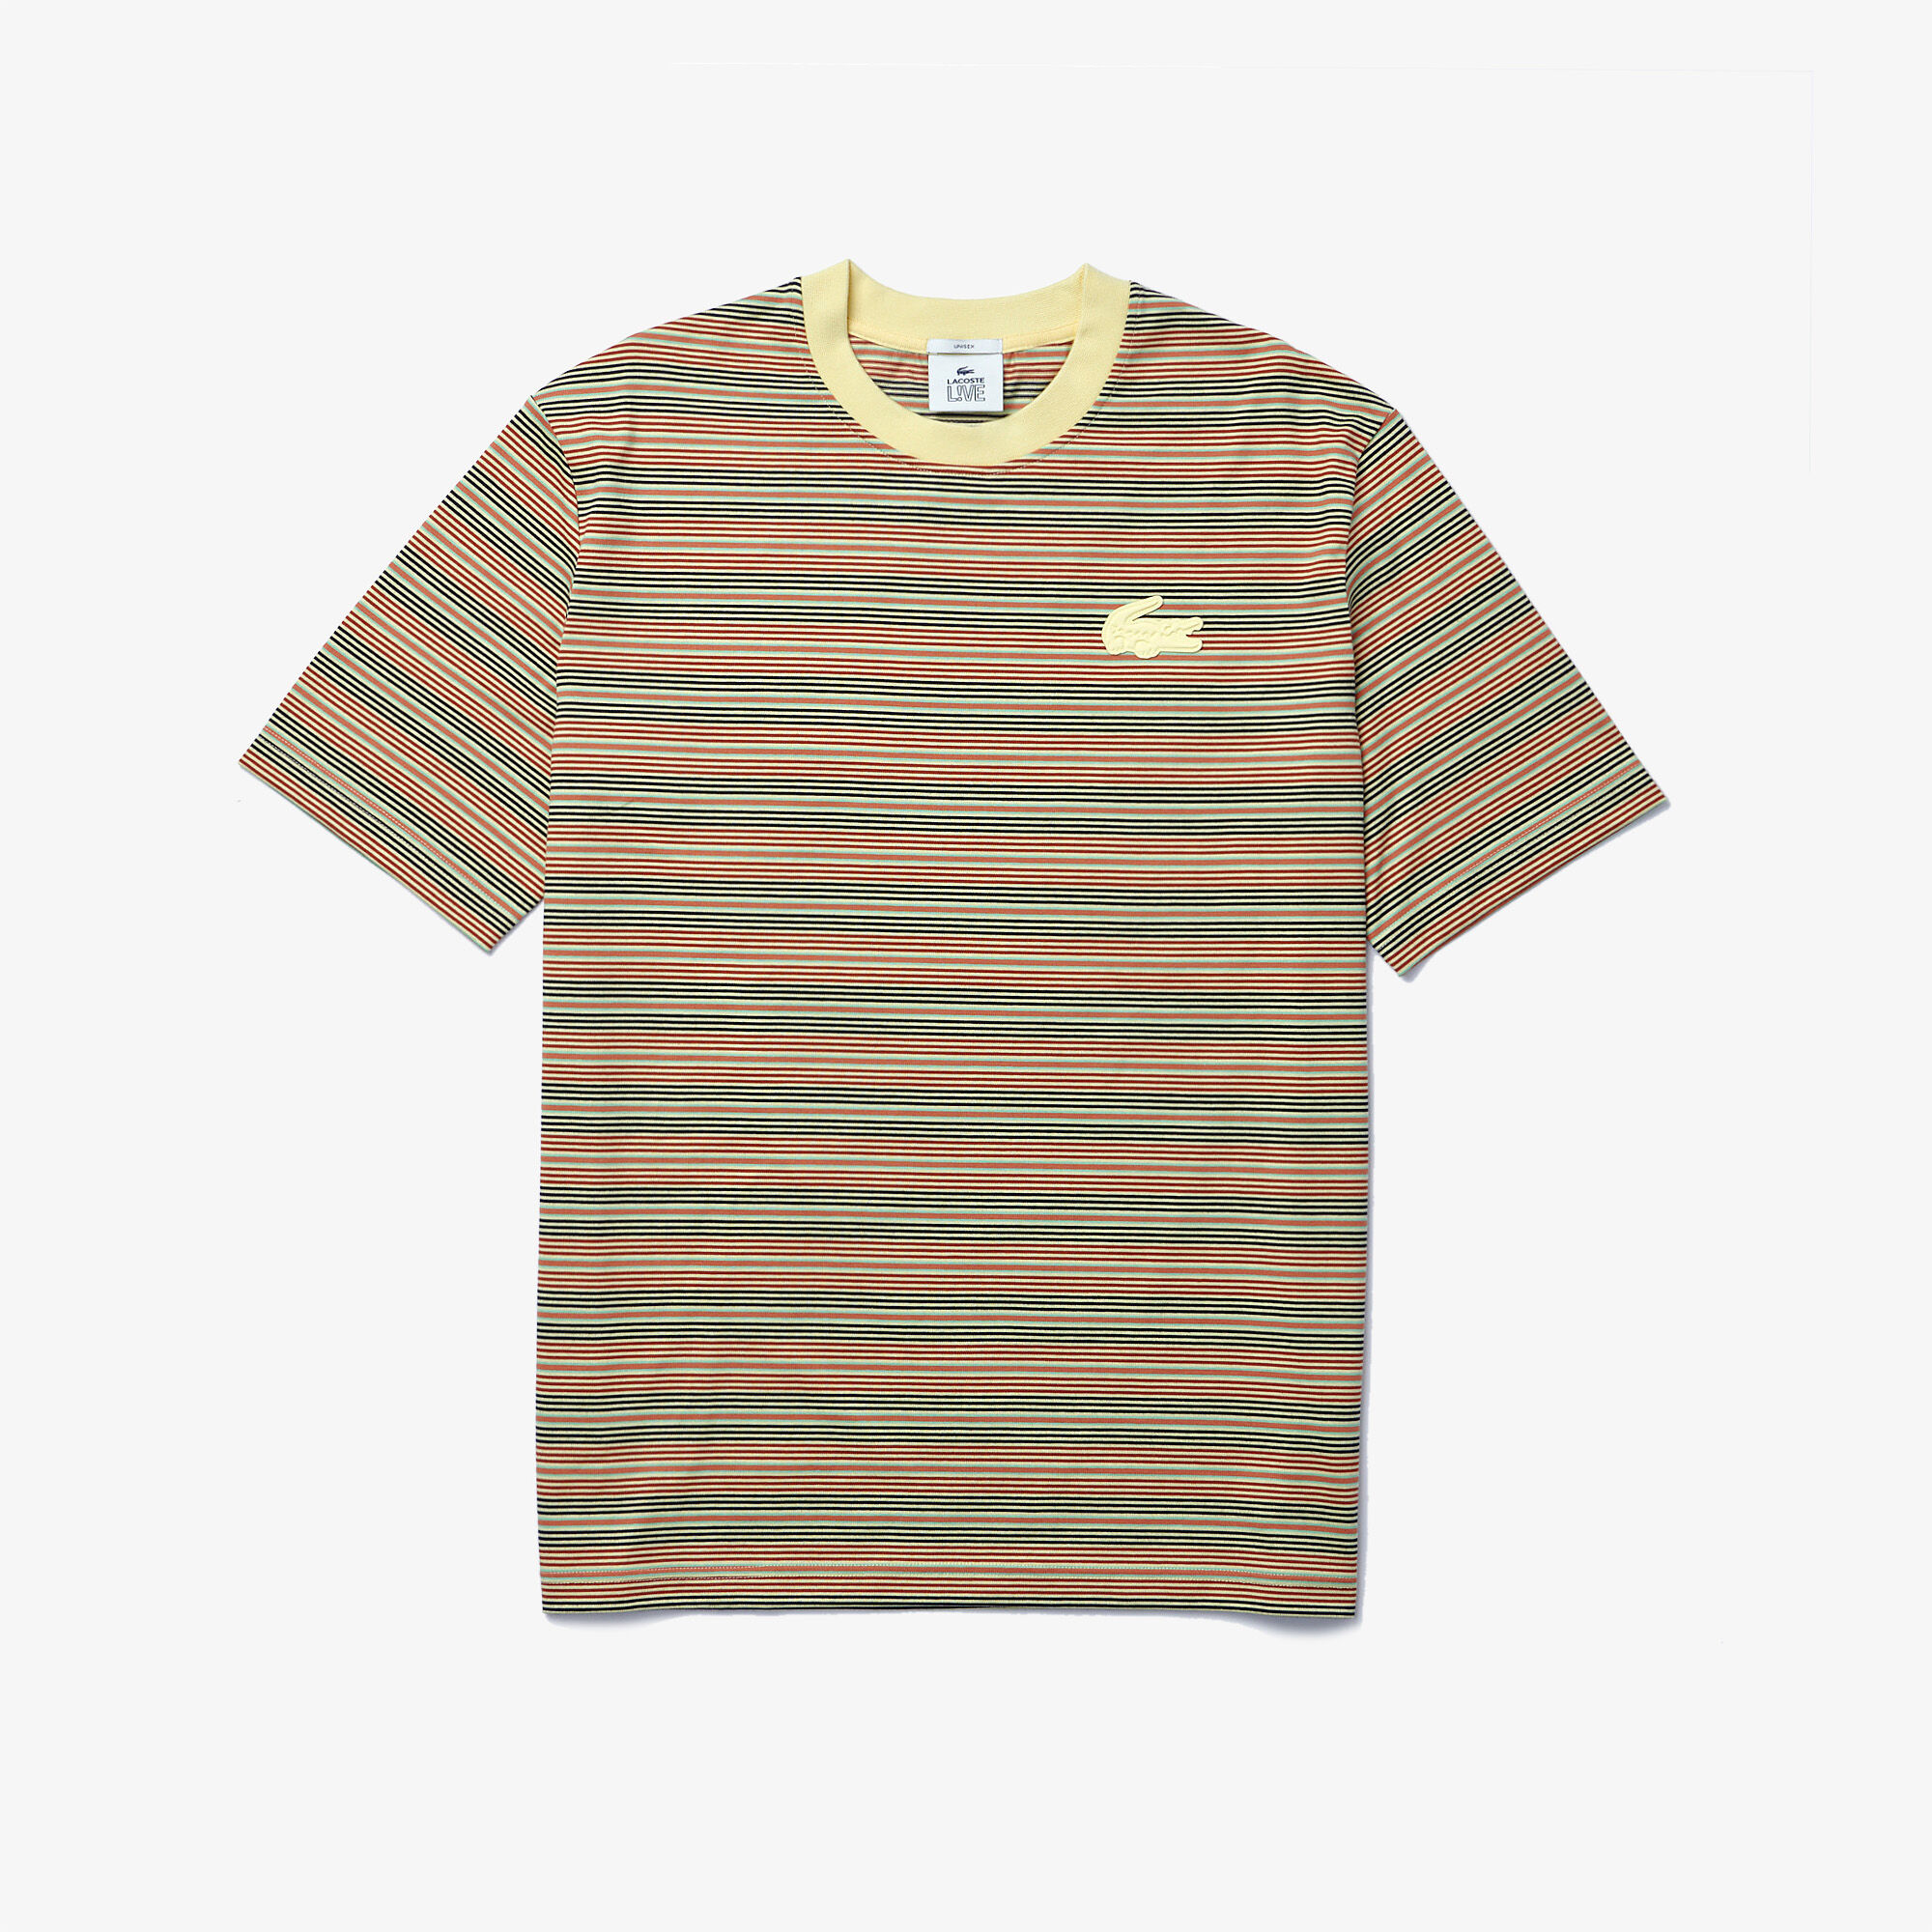 Unisex Lacoste LIVE Loose Fit Crew Neck Striped Cotton T-shirt